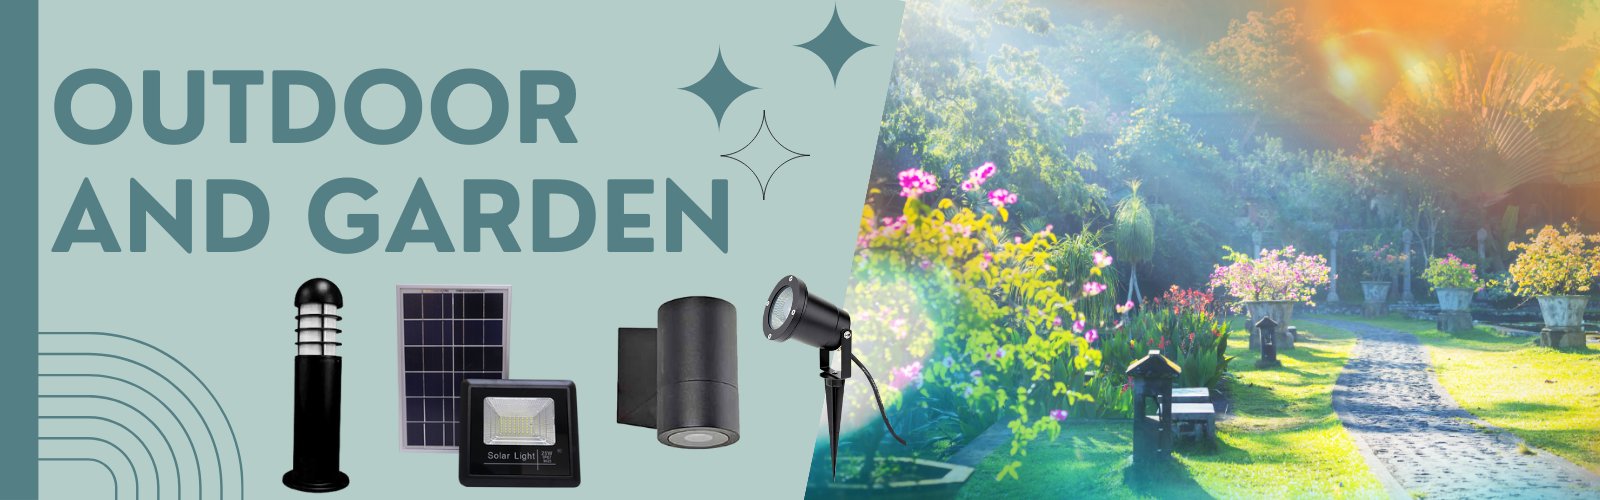 Outdoor and Garden Ecoshift Shopify